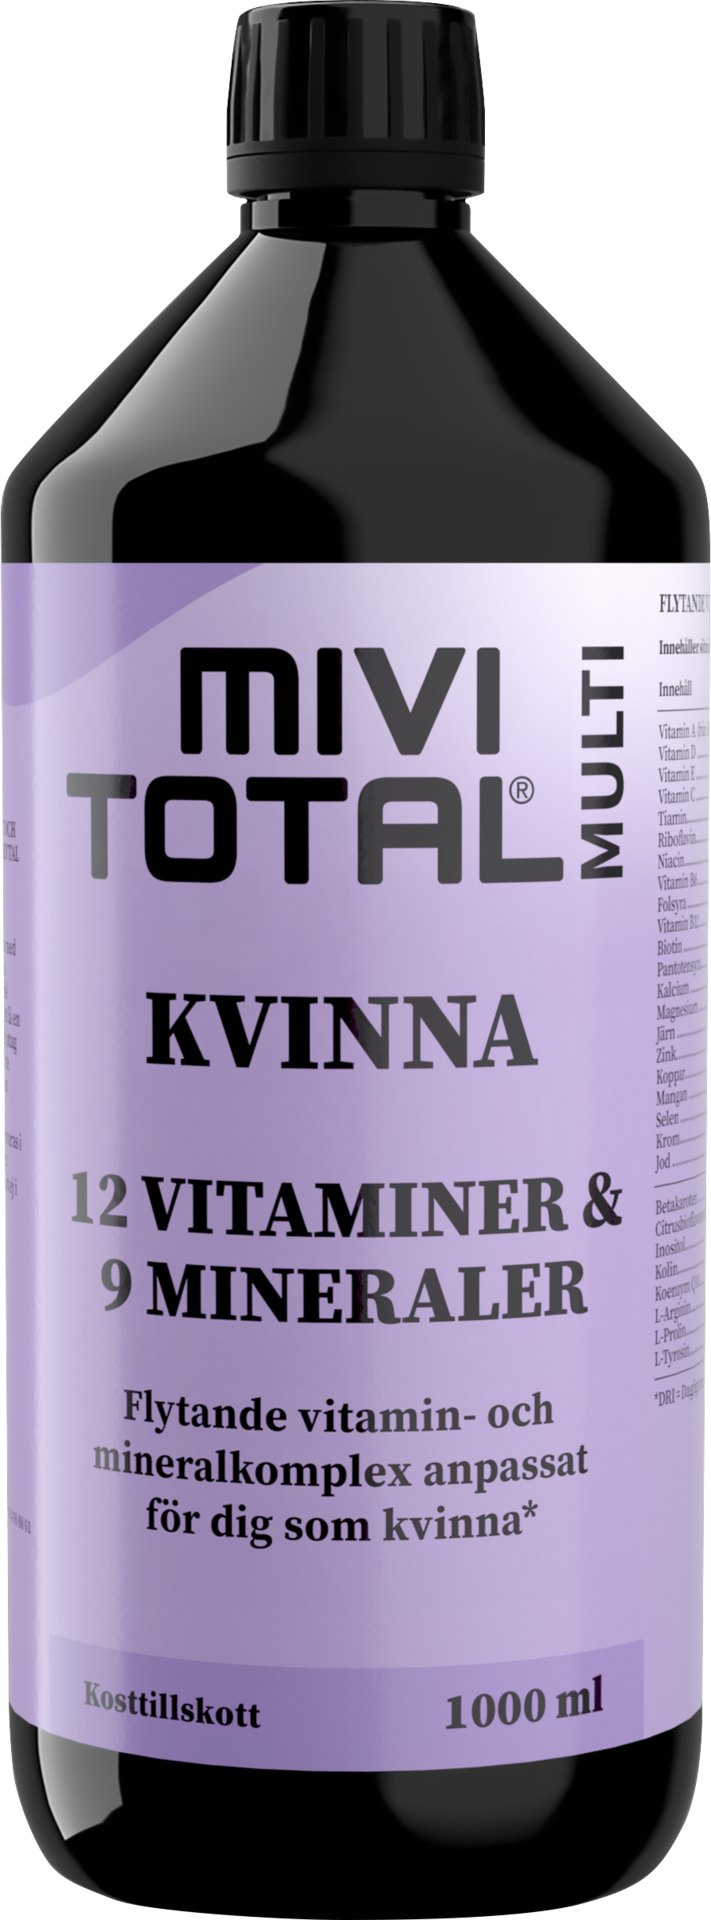 Mivitotal Kvinna Multivitaminer & Mineraler 1000 ml